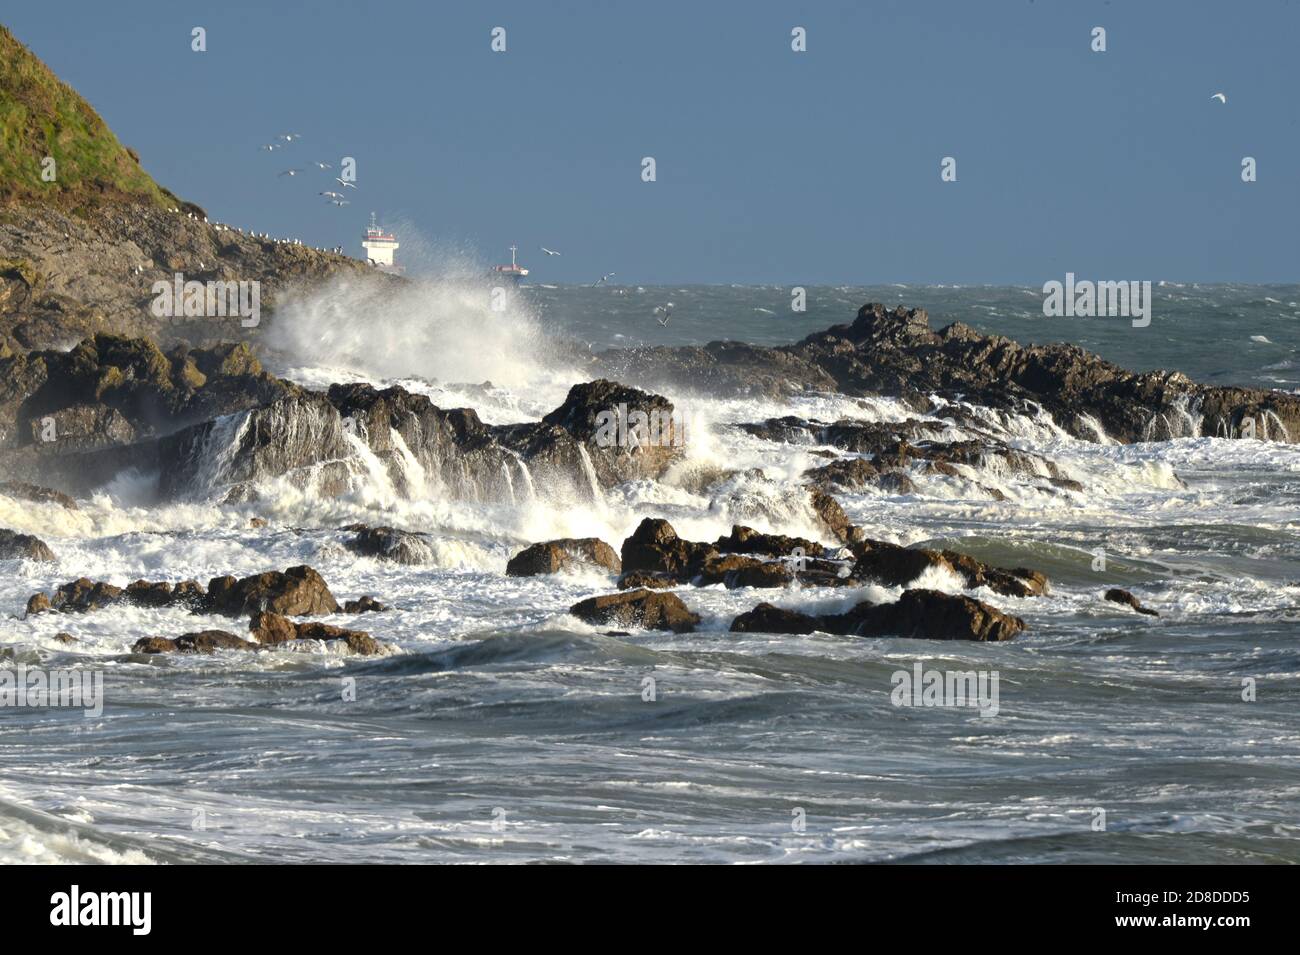 Große Welle überflutet die Felsen auf dieser Landzunge auf Gower und sendet Ströme von Wasser auf das Land. Ein Schiff reitet im Hintergrund den Sturm Stockfoto